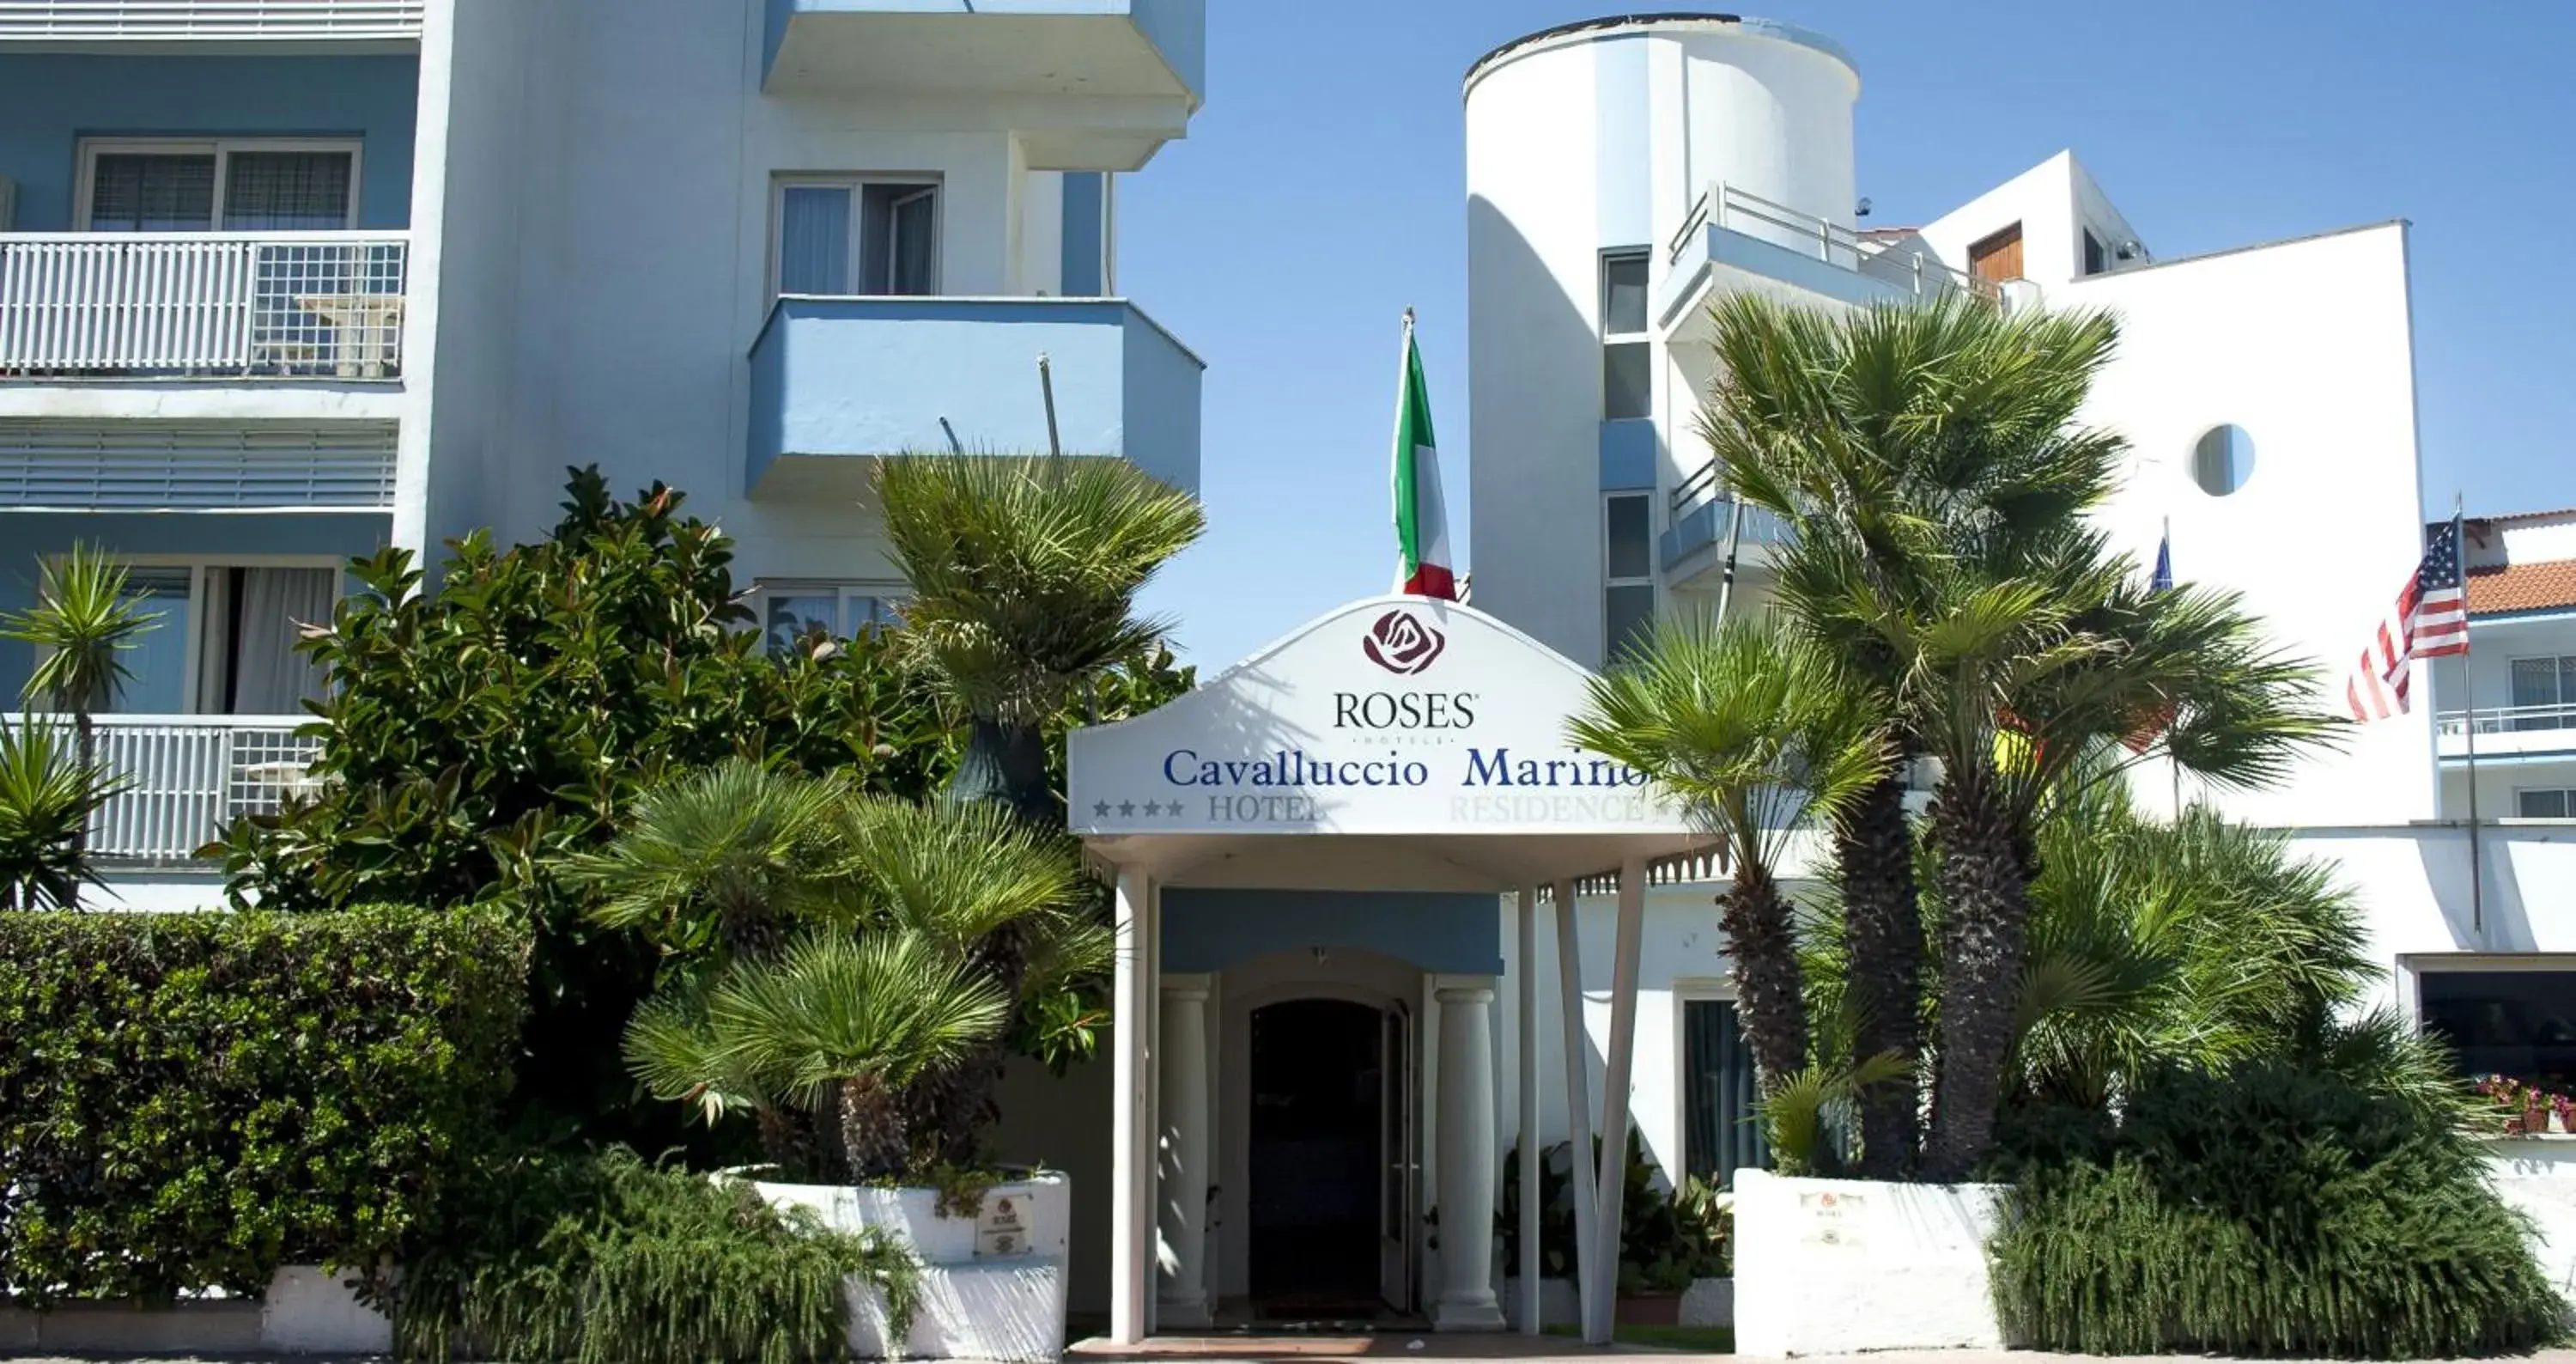 Facade/entrance, Property Building in Hotel Cavalluccio Marino